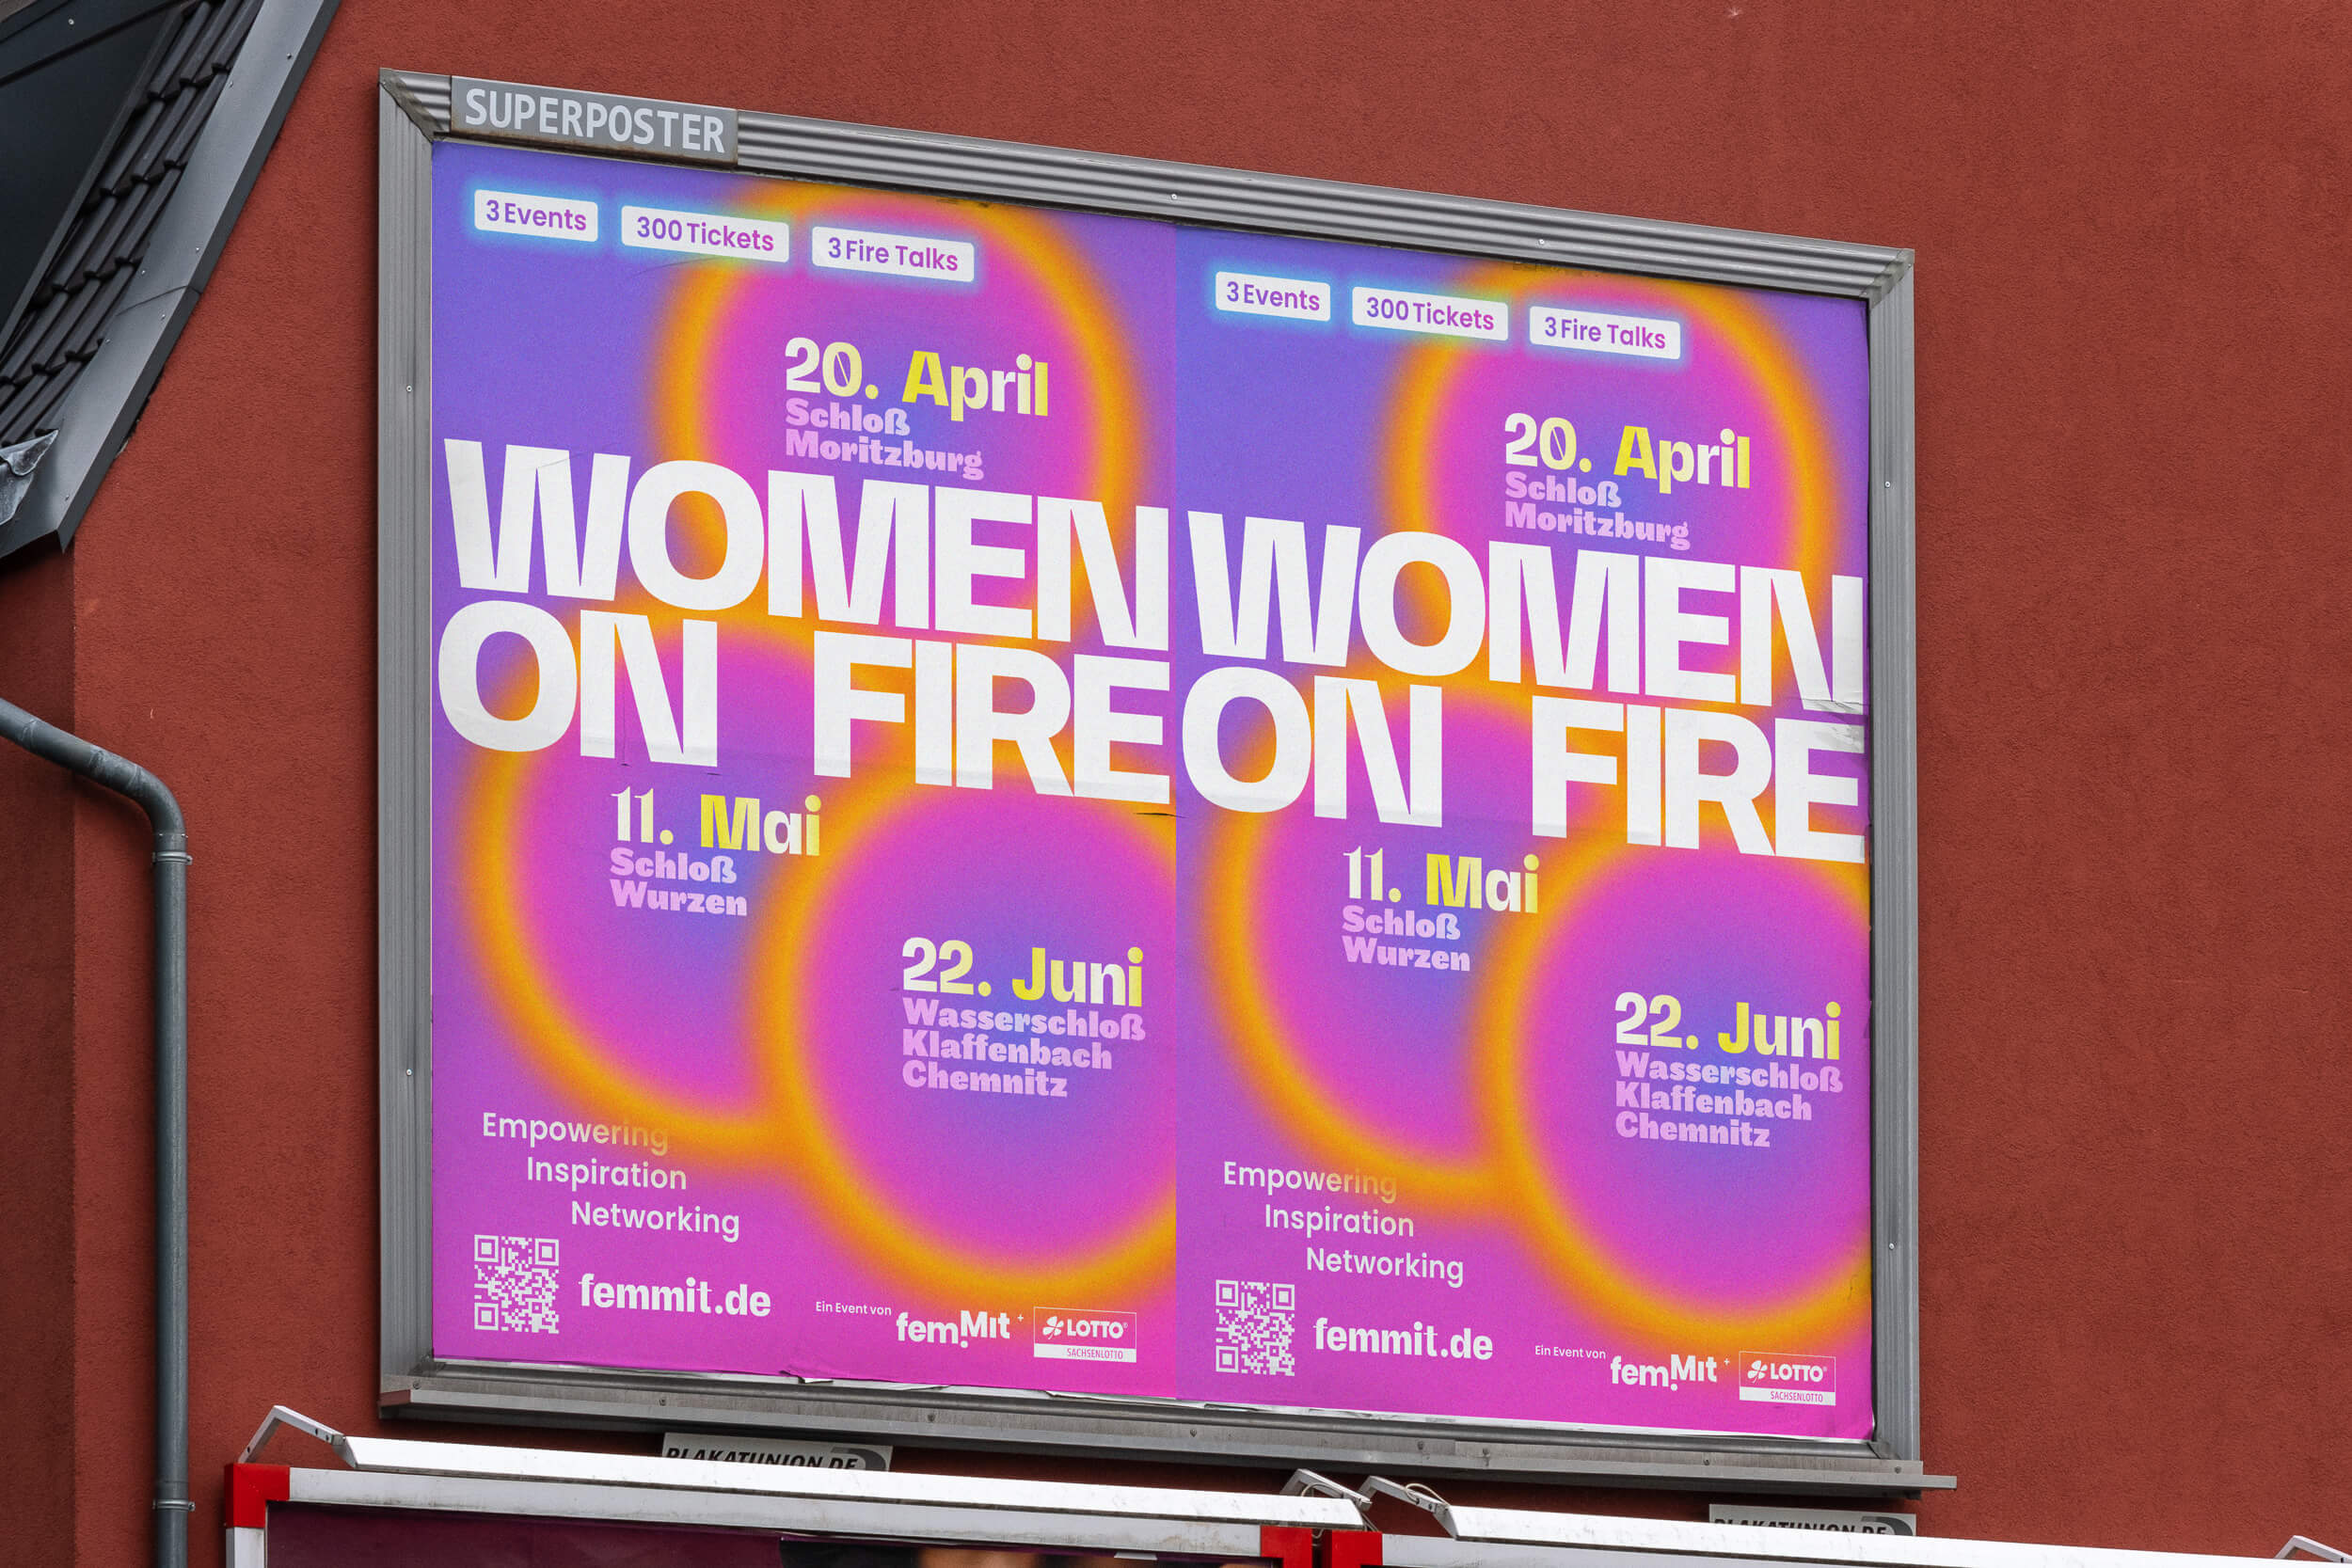 Büro Gestalten: Veranstaltungskommunikation (Women on Fire)